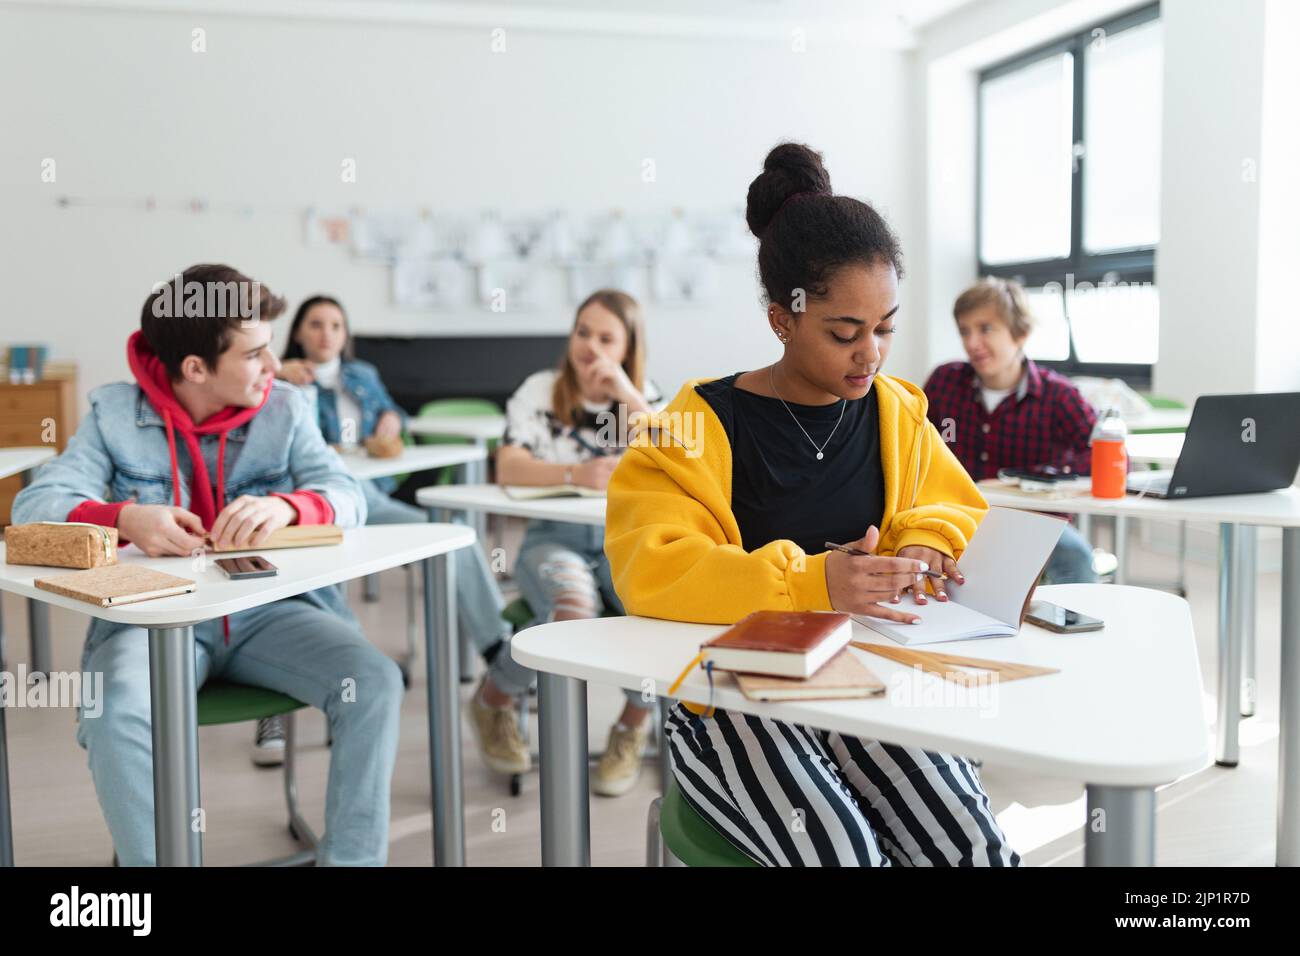 Los estudiantes de secundaria prestan atención en clase, sentados en sus escritorios y escribiendo notas, concepto de regreso a la escuela. Foto de stock